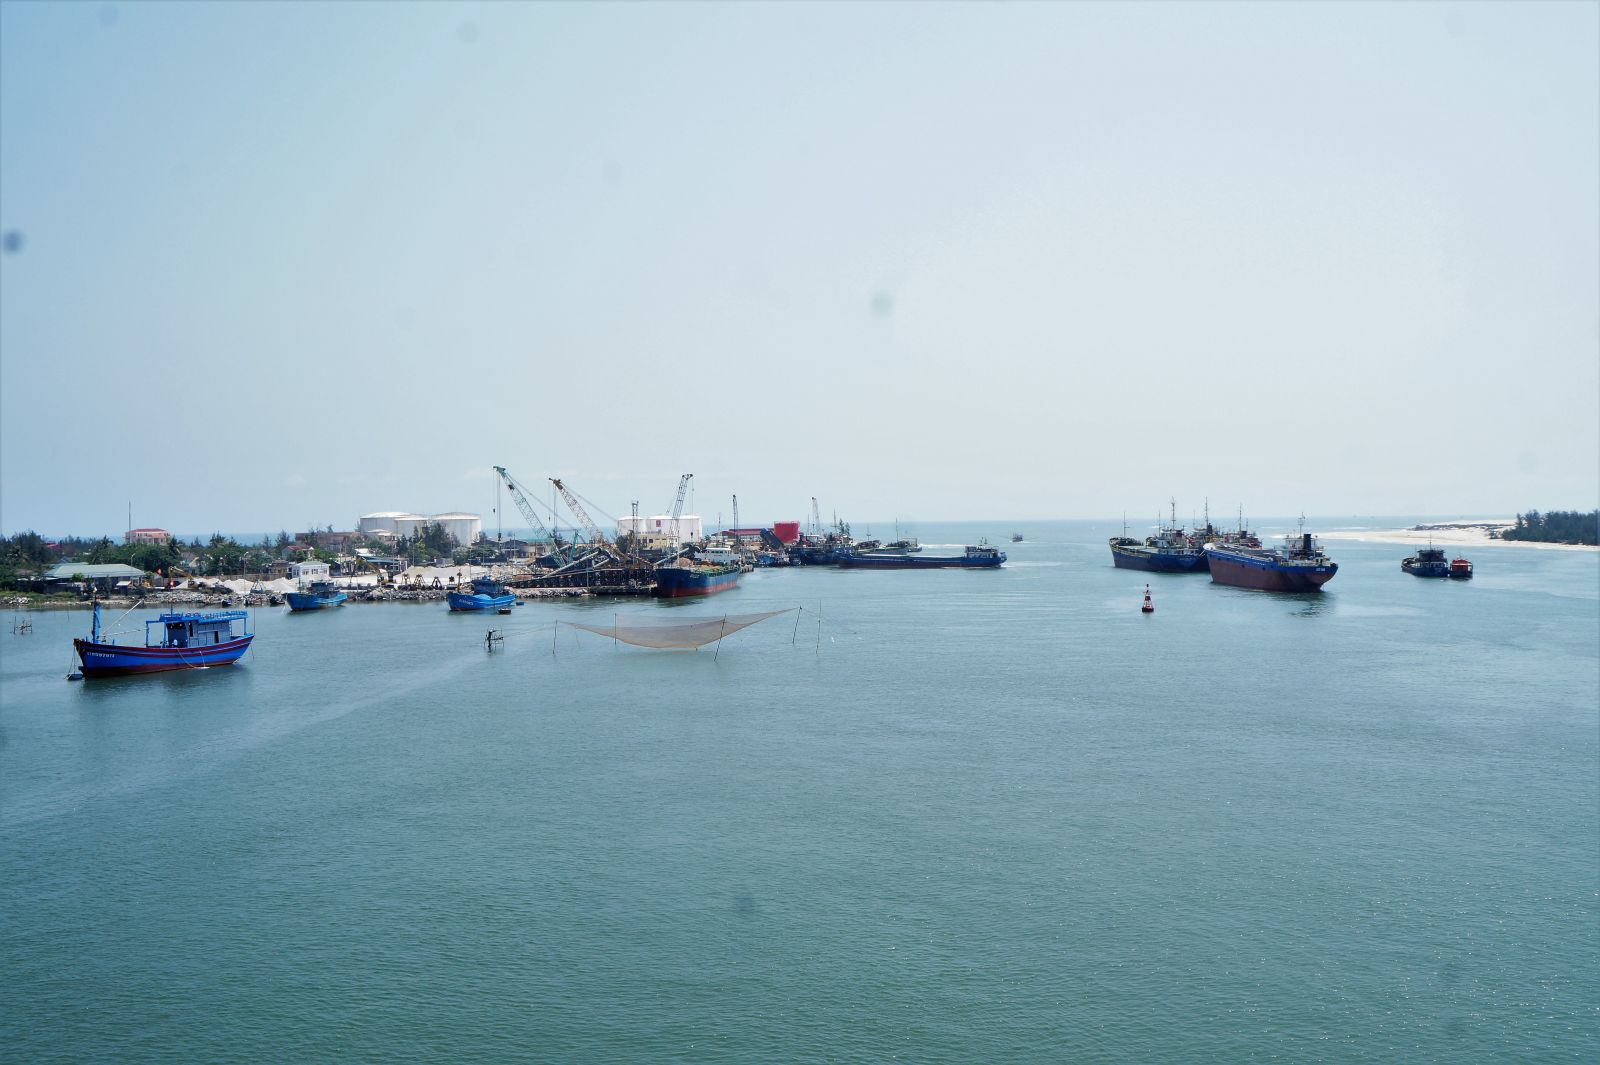 Cảng Cửa Việt, nằm trong định hướng xây dựng chuỗi phát triển hỗn hợp thương mại, dịch vụ, du lịch, logistics, cảng biển, hậu cần nghề cá tỉnh Quảng Trị 